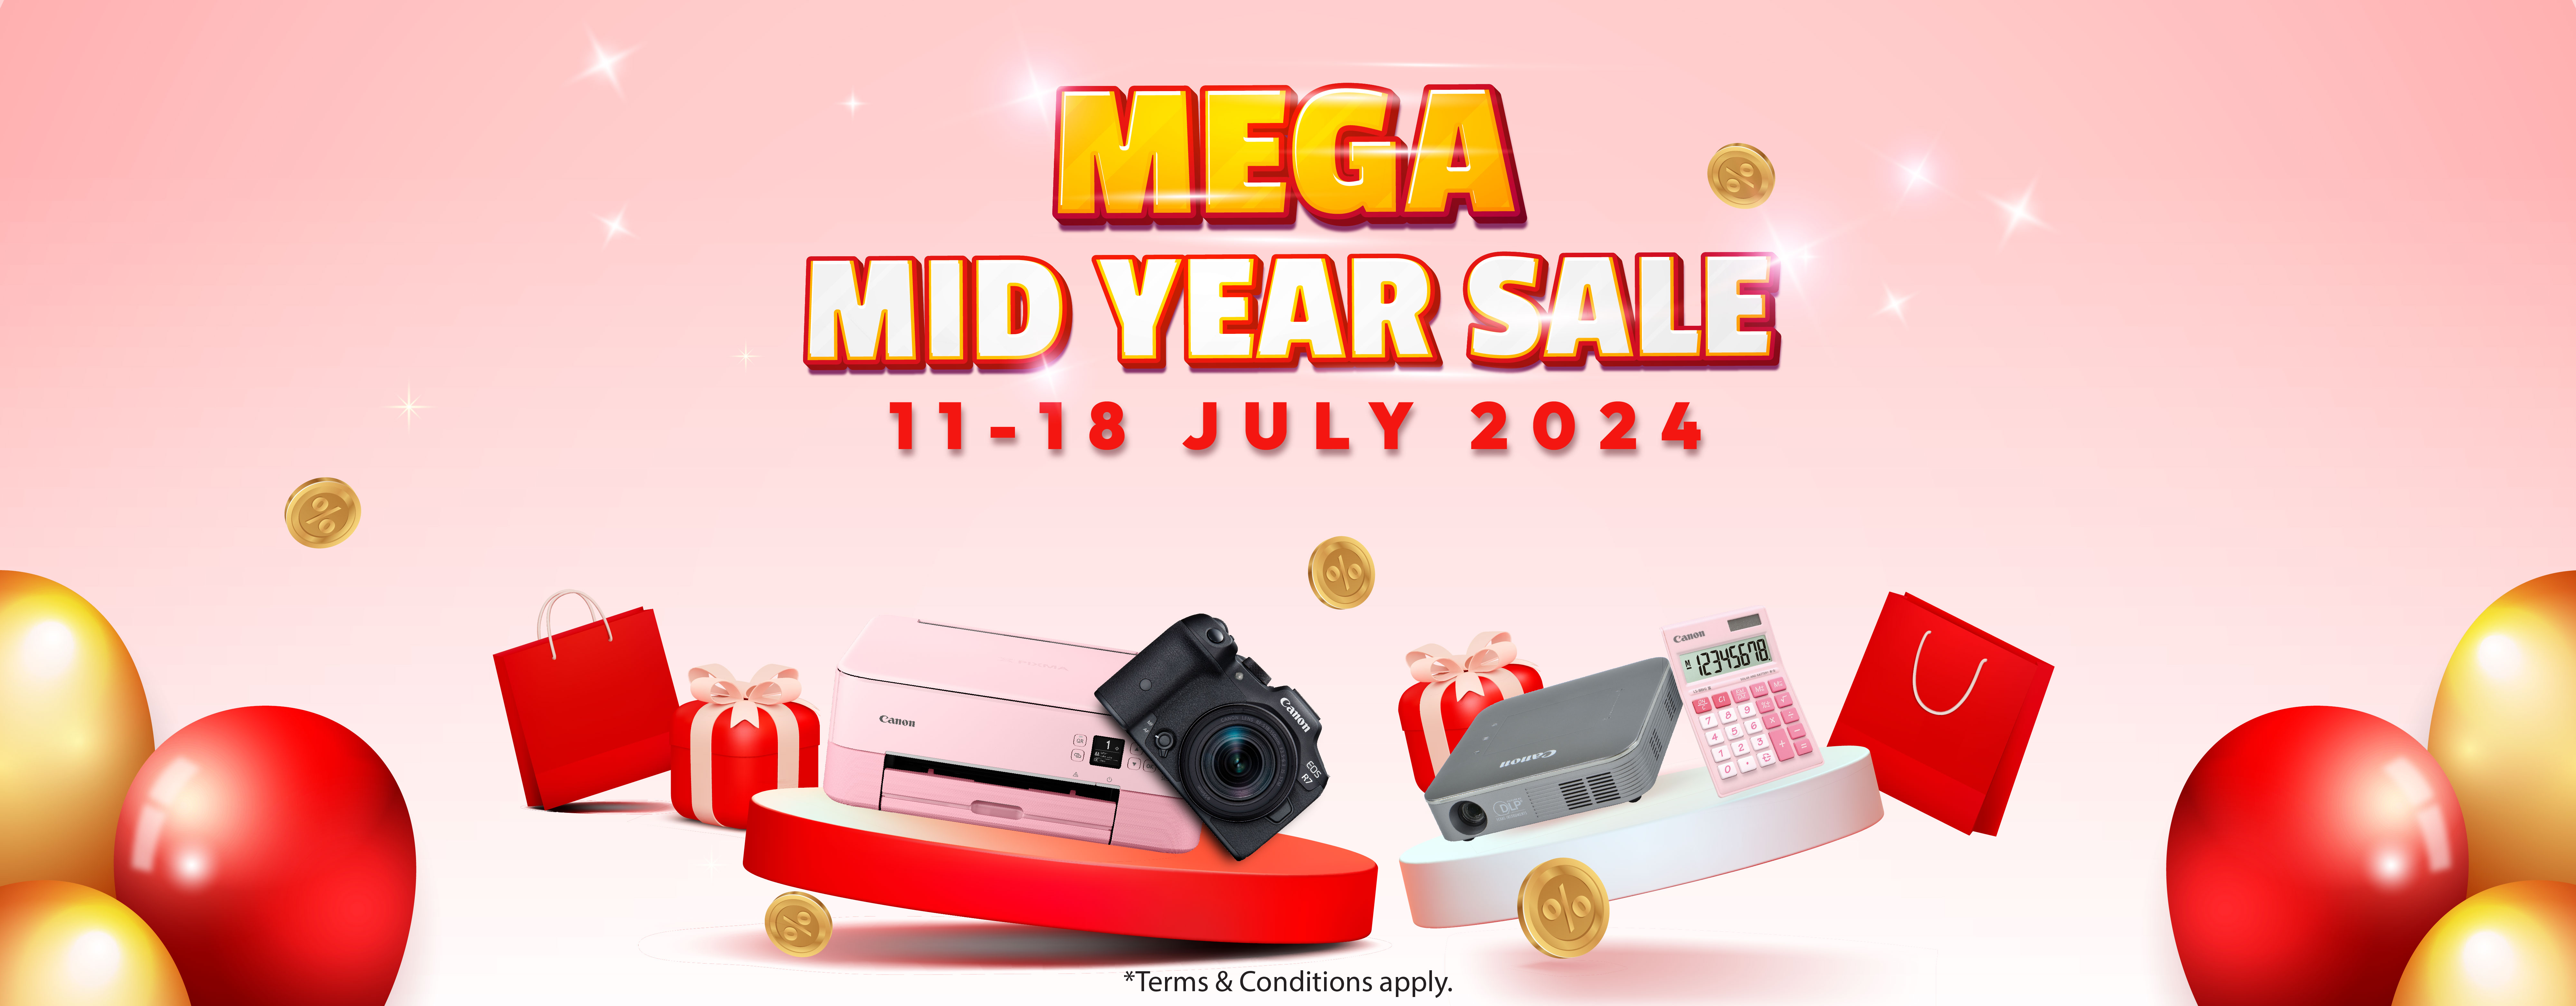 Mega Mid Year Sale